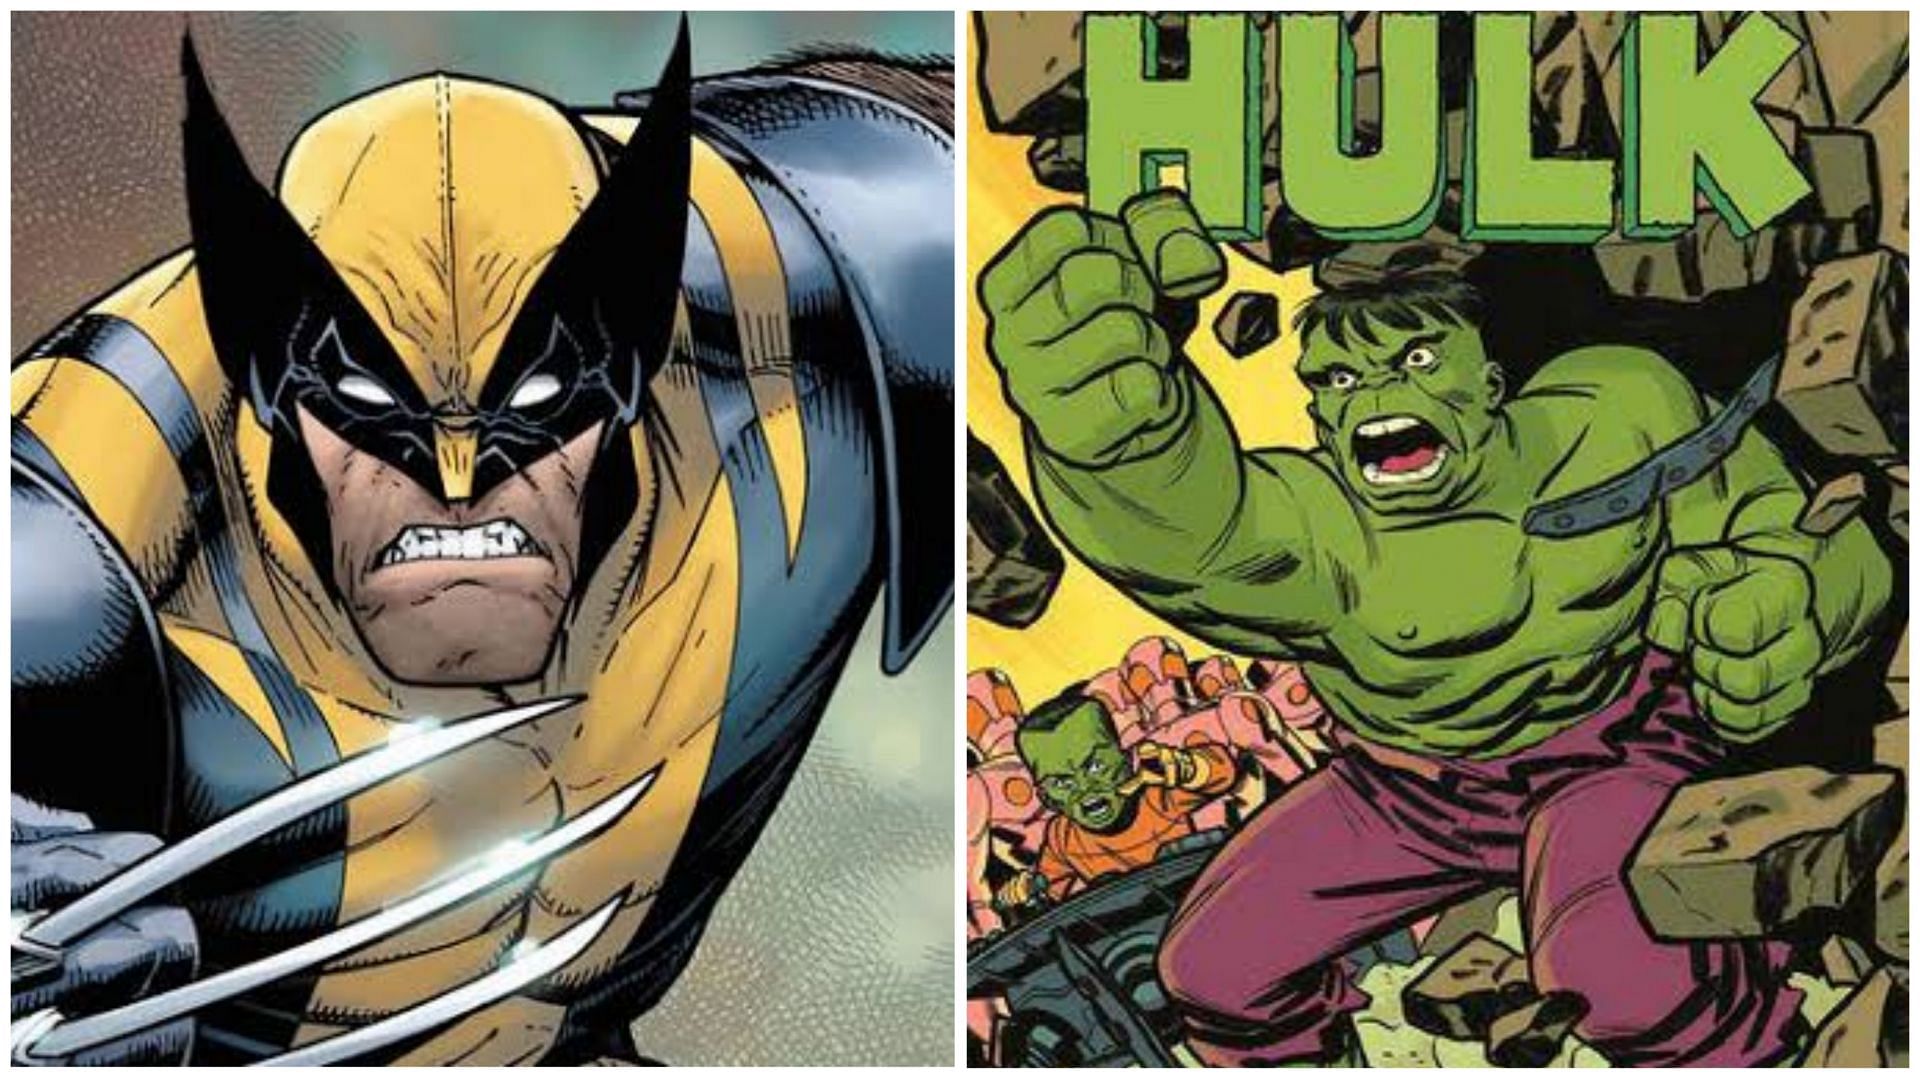 Wolverine and Hulk (Images via Marvel Comics)